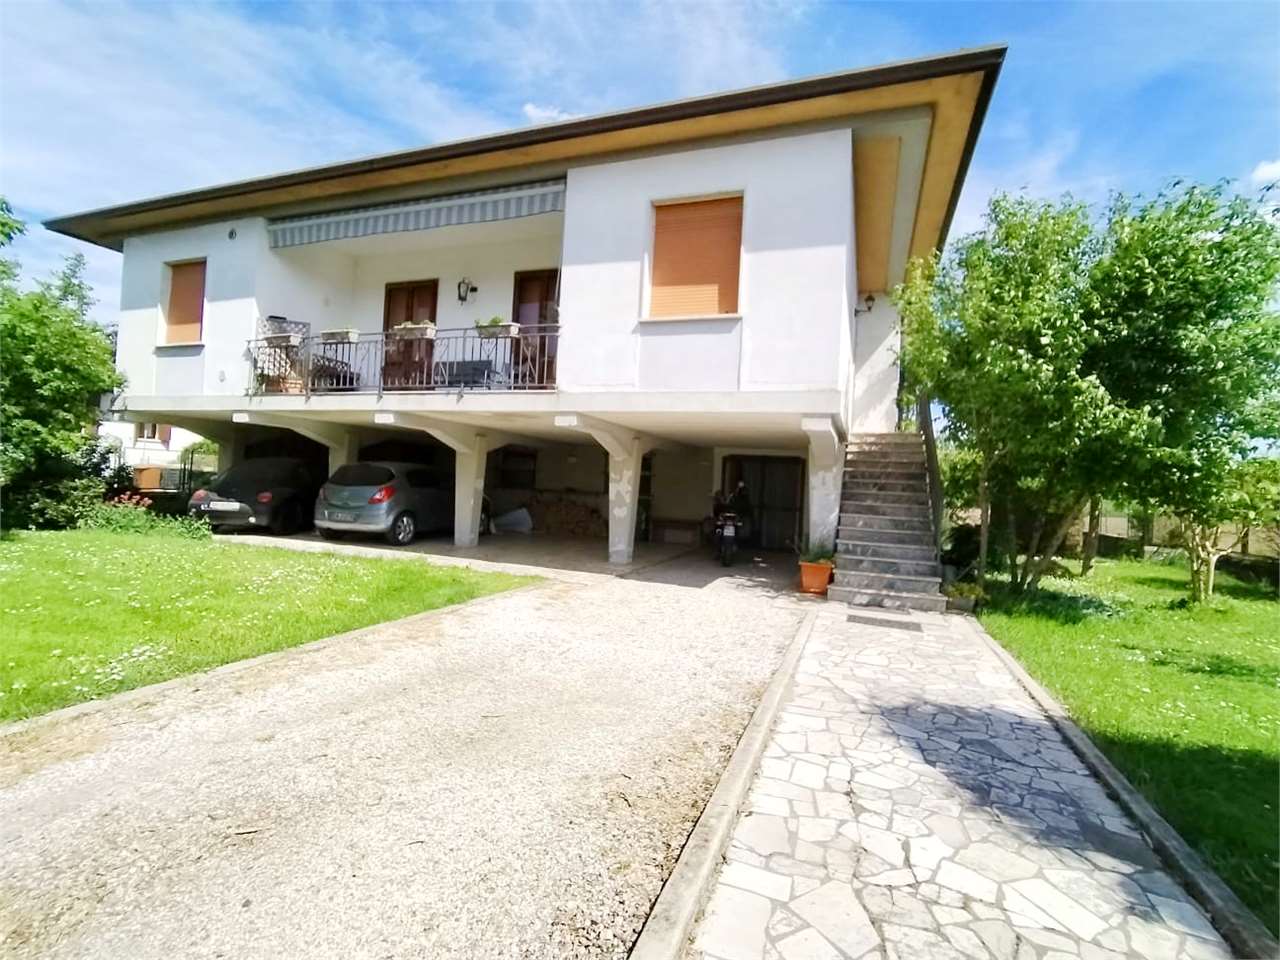 Villa in Vendita a Ronco all'Adige